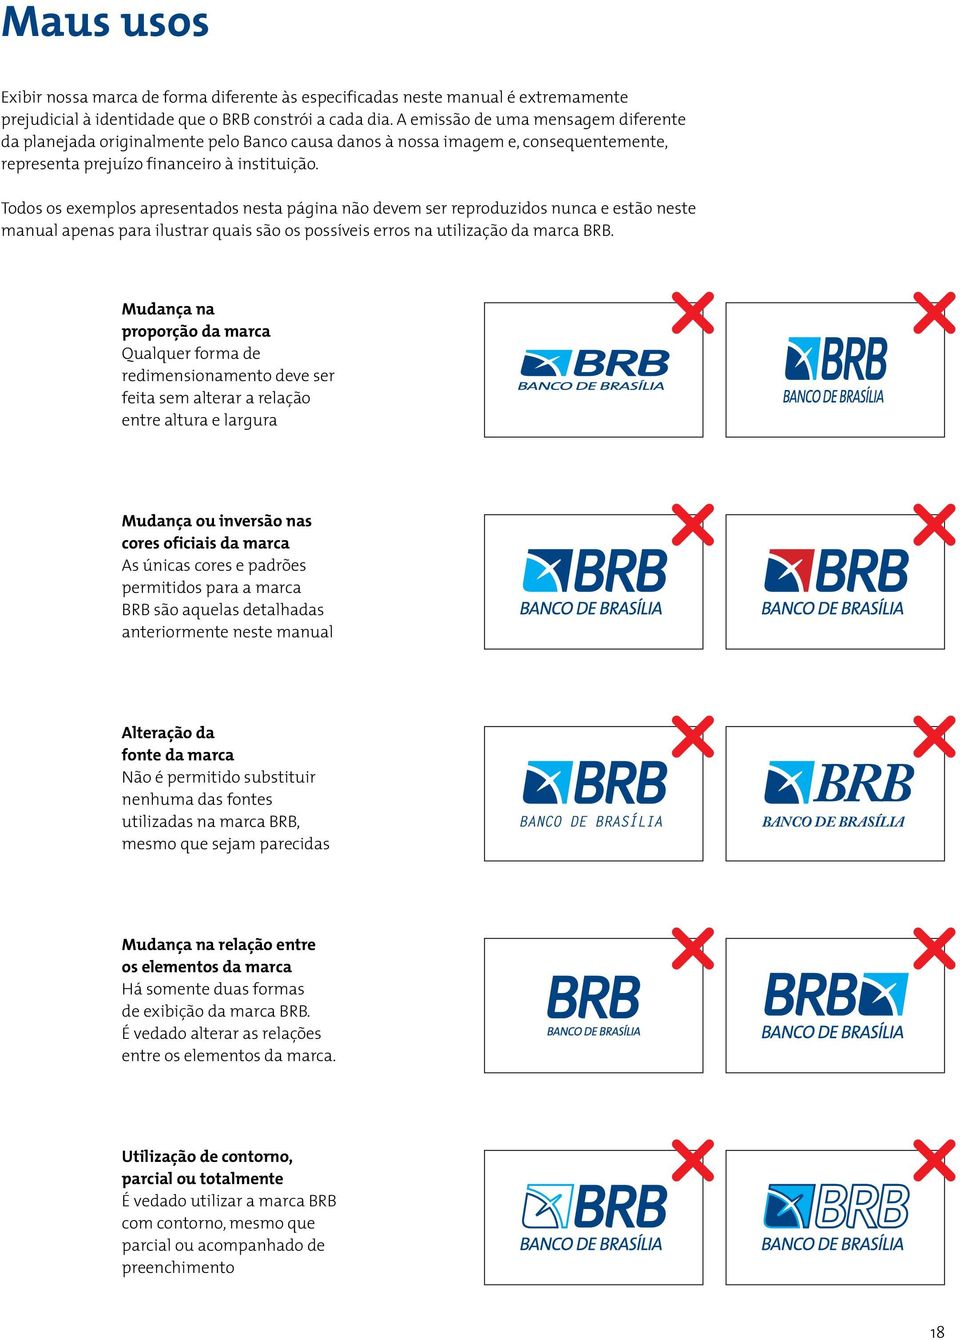 Todos os exemplos apresentados nesta página não devem ser reproduzidos nunca e estão neste manual apenas para ilustrar quais são os possíveis erros na utilização da marca BRB.